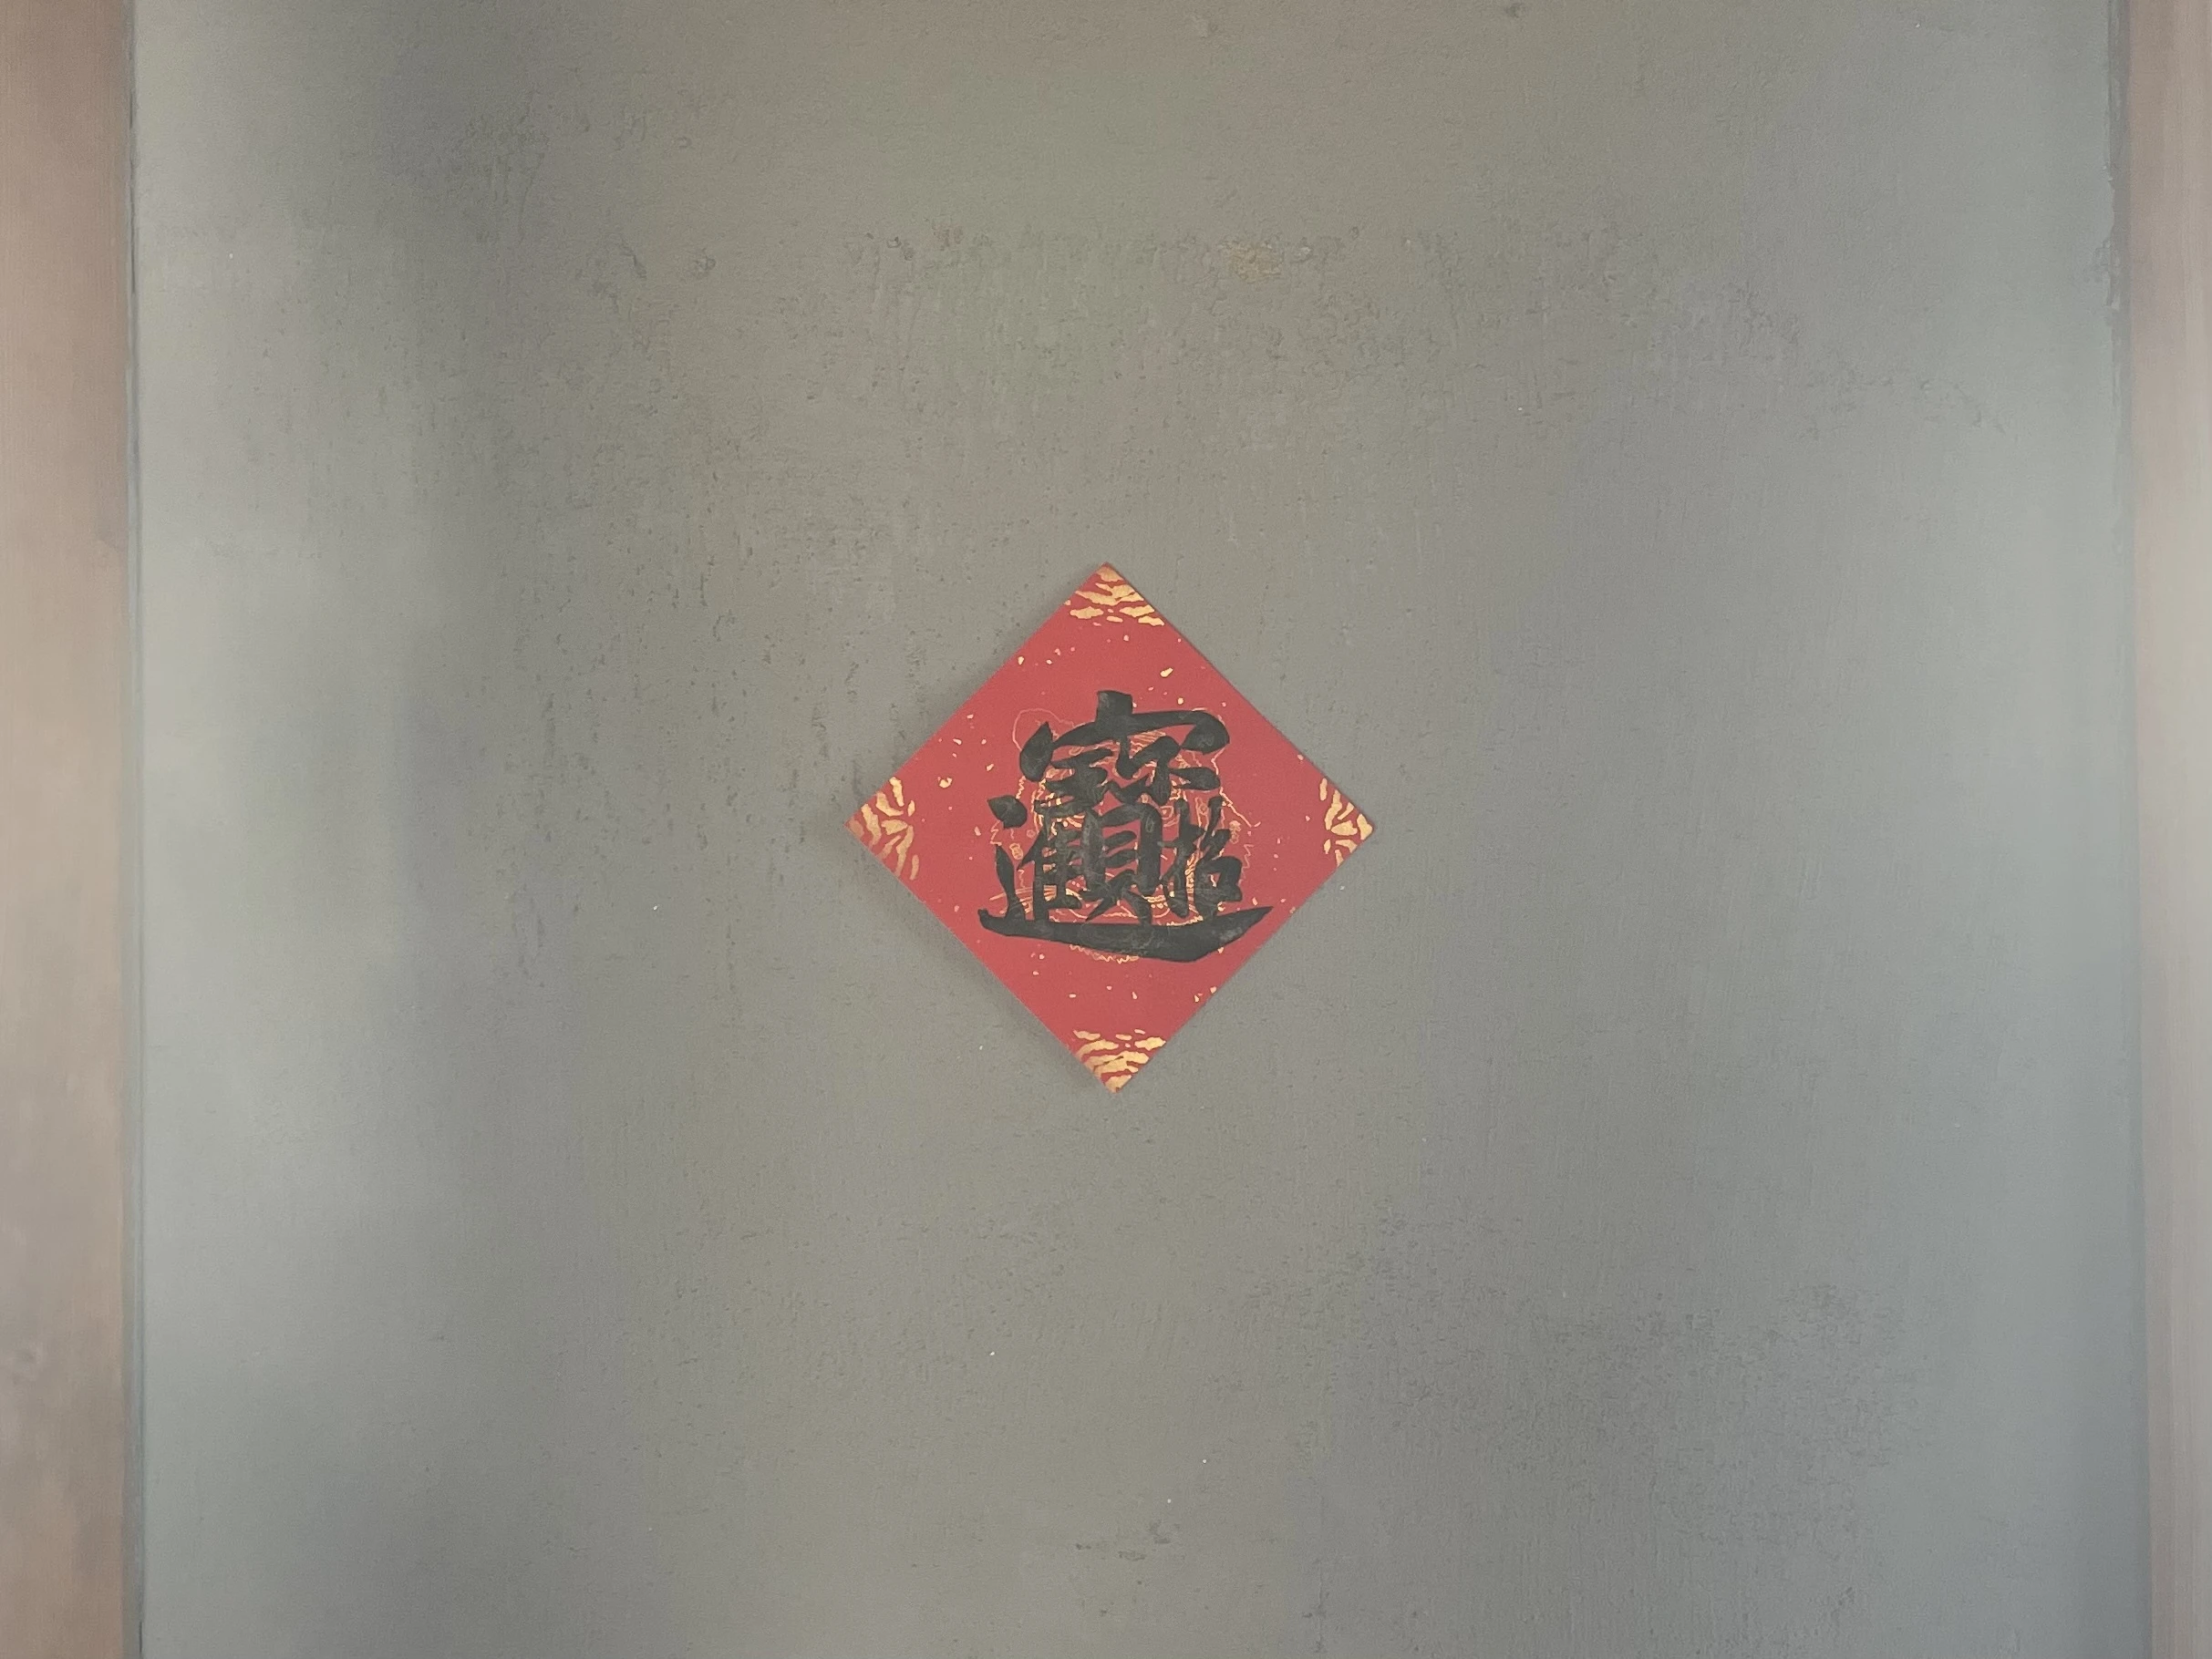 Ryu Cafe 内観 台湾の壁飾り